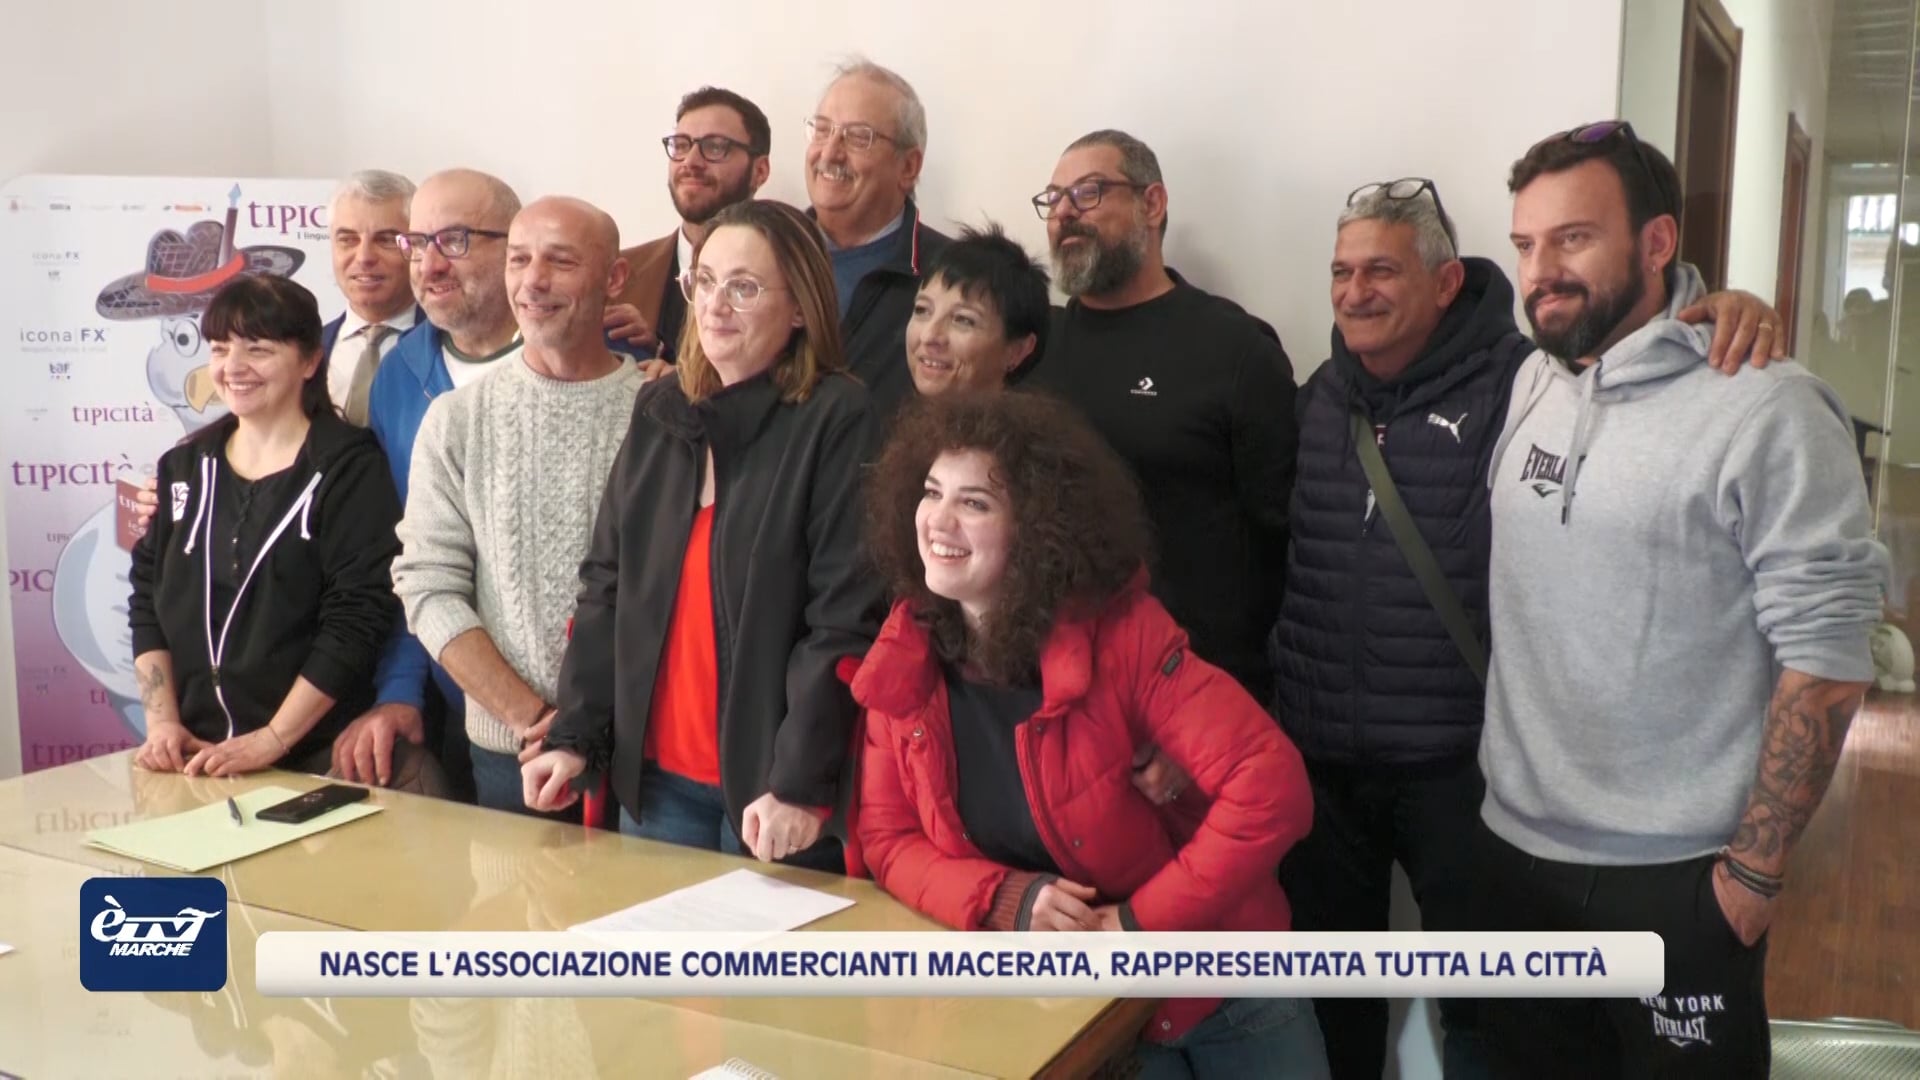 Nasce l'Associazione Commercianti Macerata, rappresentata tutta la città - VIDEO